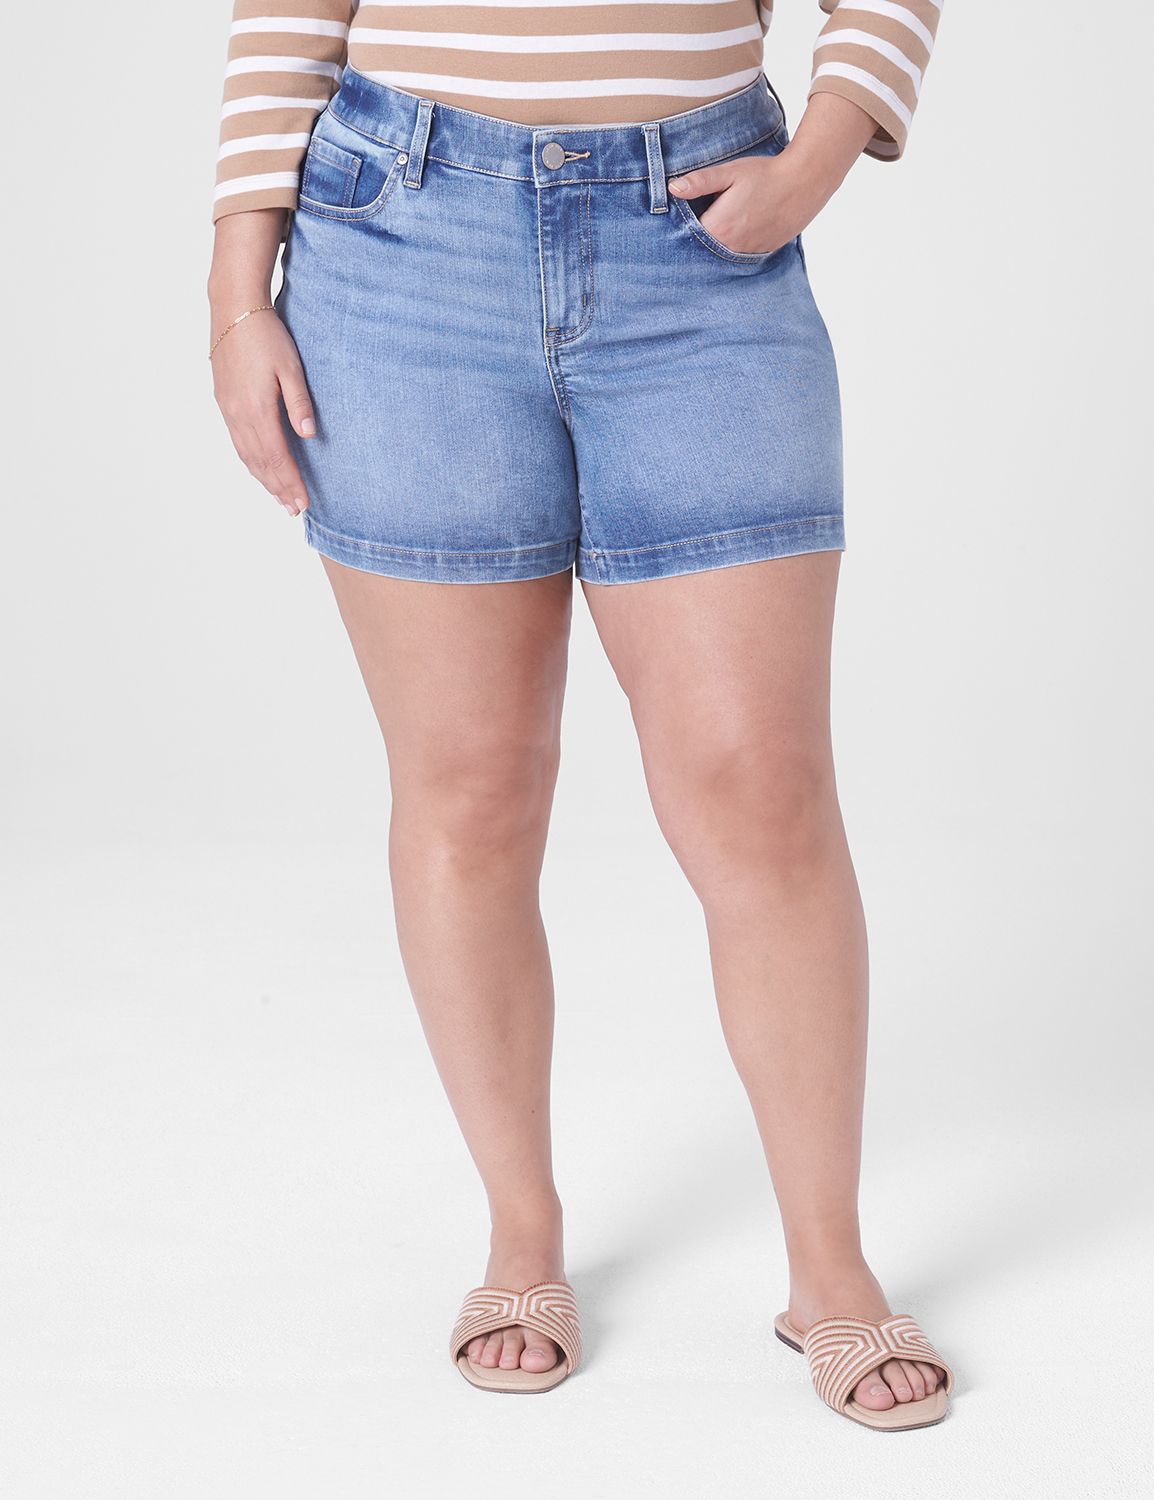 Plus Size Women's Capris, Shorts & Crop Pants | Bryant